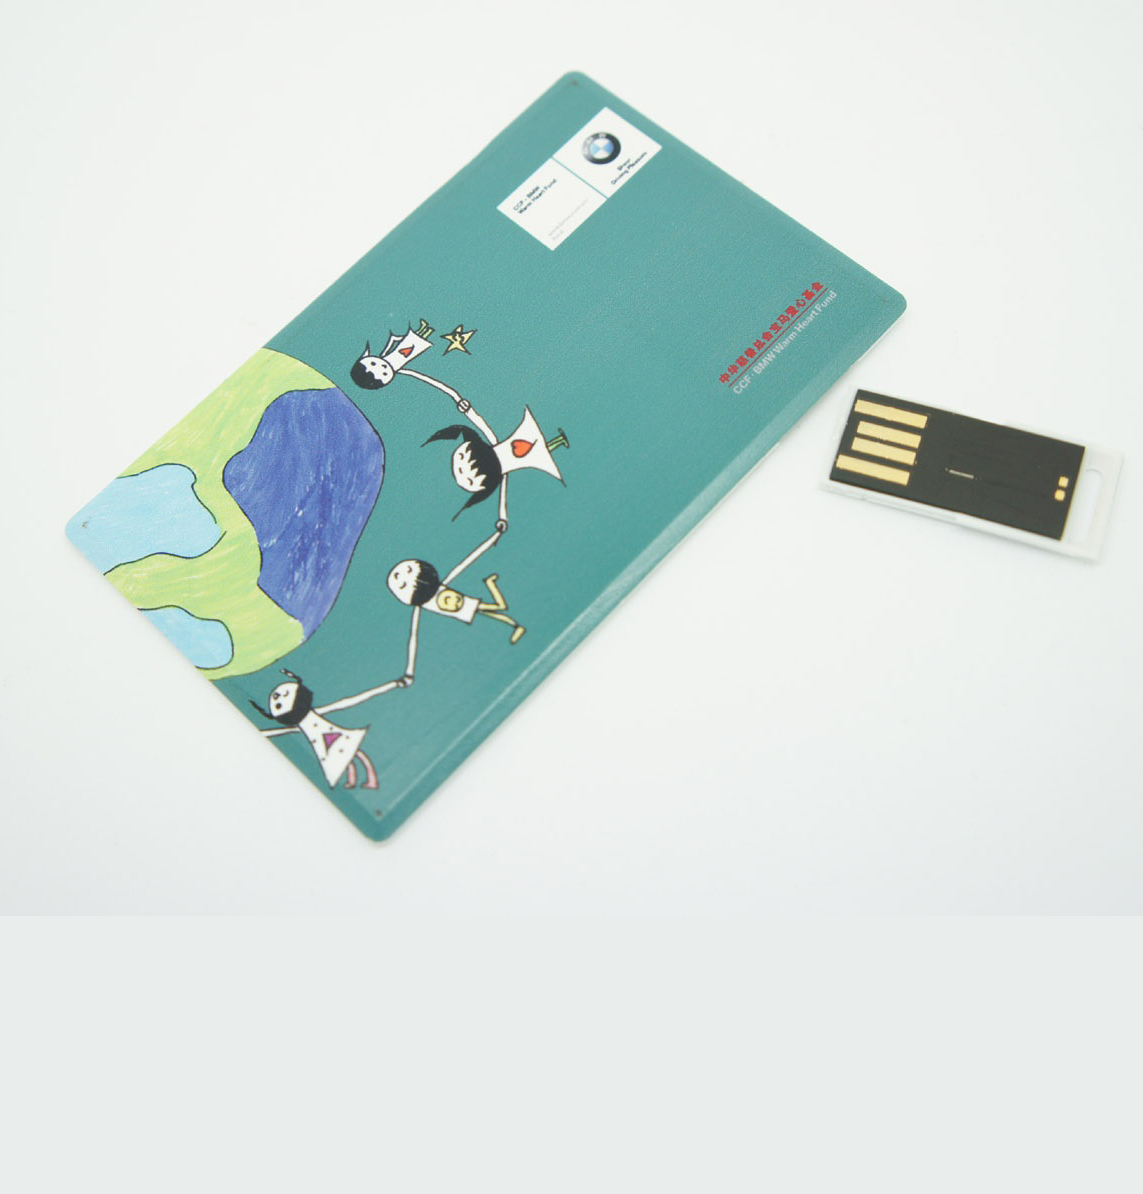 Card USB drive